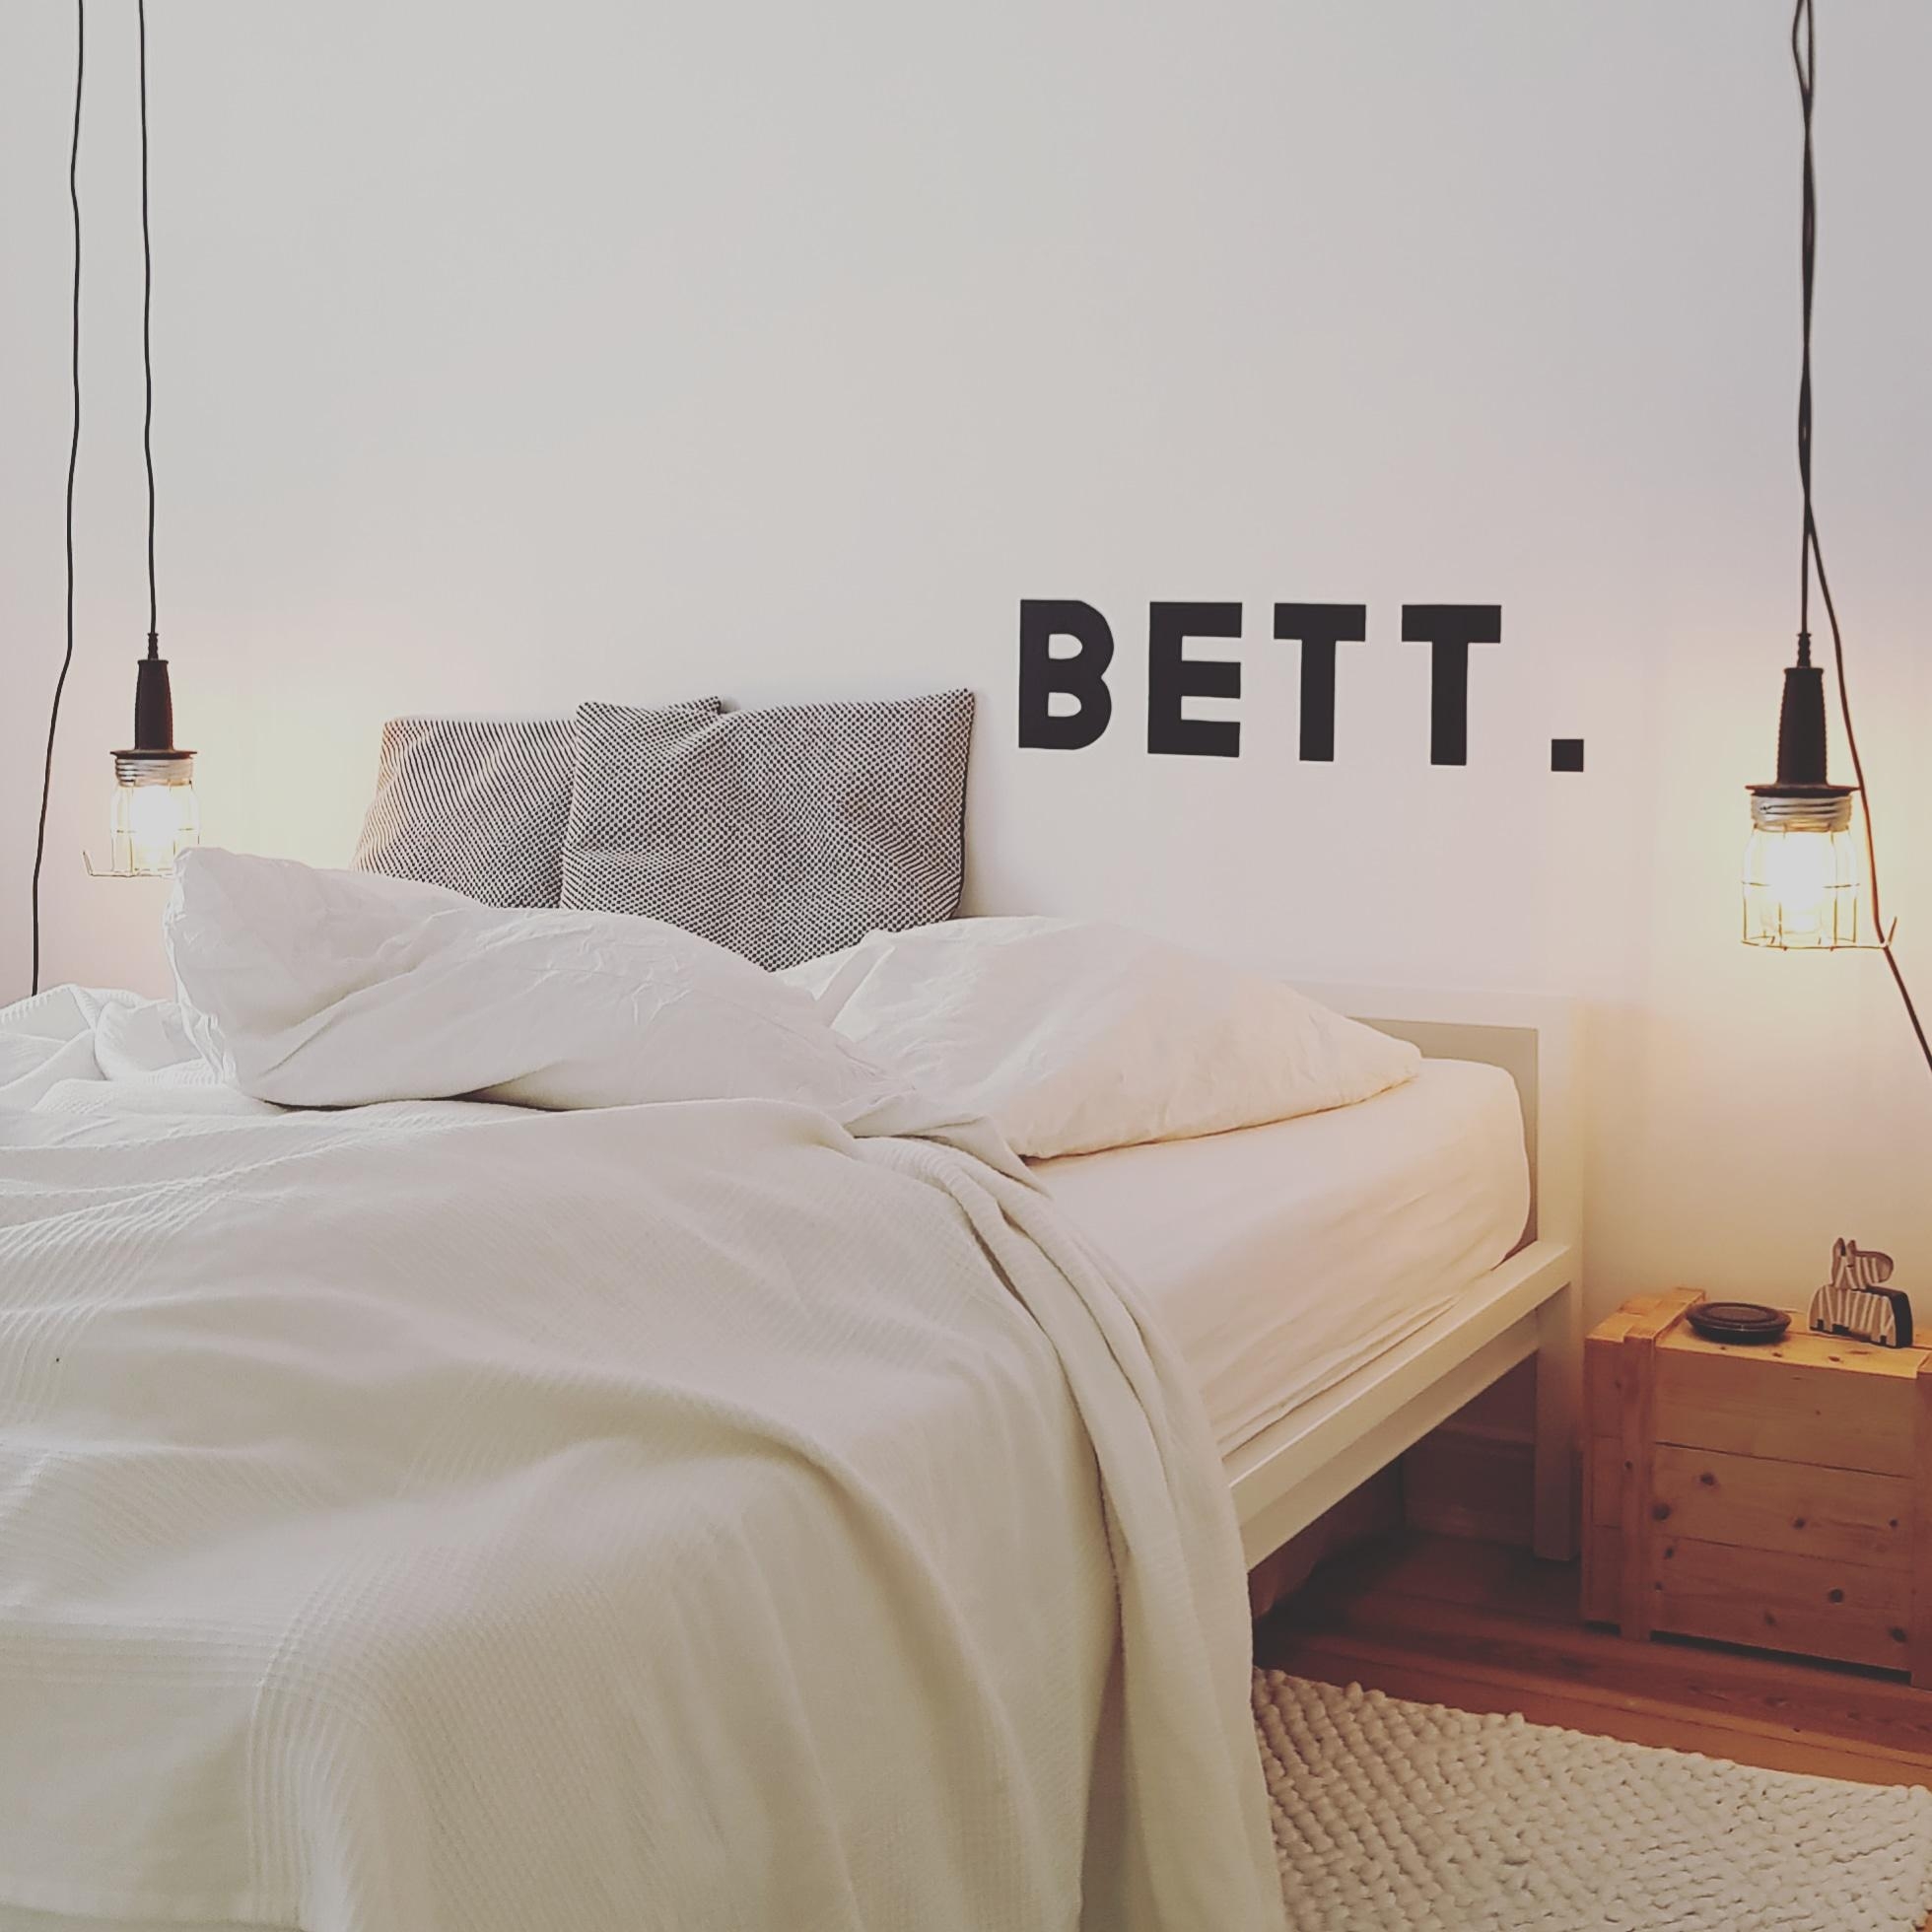 Ein Bett ist ein Bett ist ein Bett! :)
#scandiliving#hanshansen#schlafzimmer#fürmehrrealitätiminternet#minimalism#interi